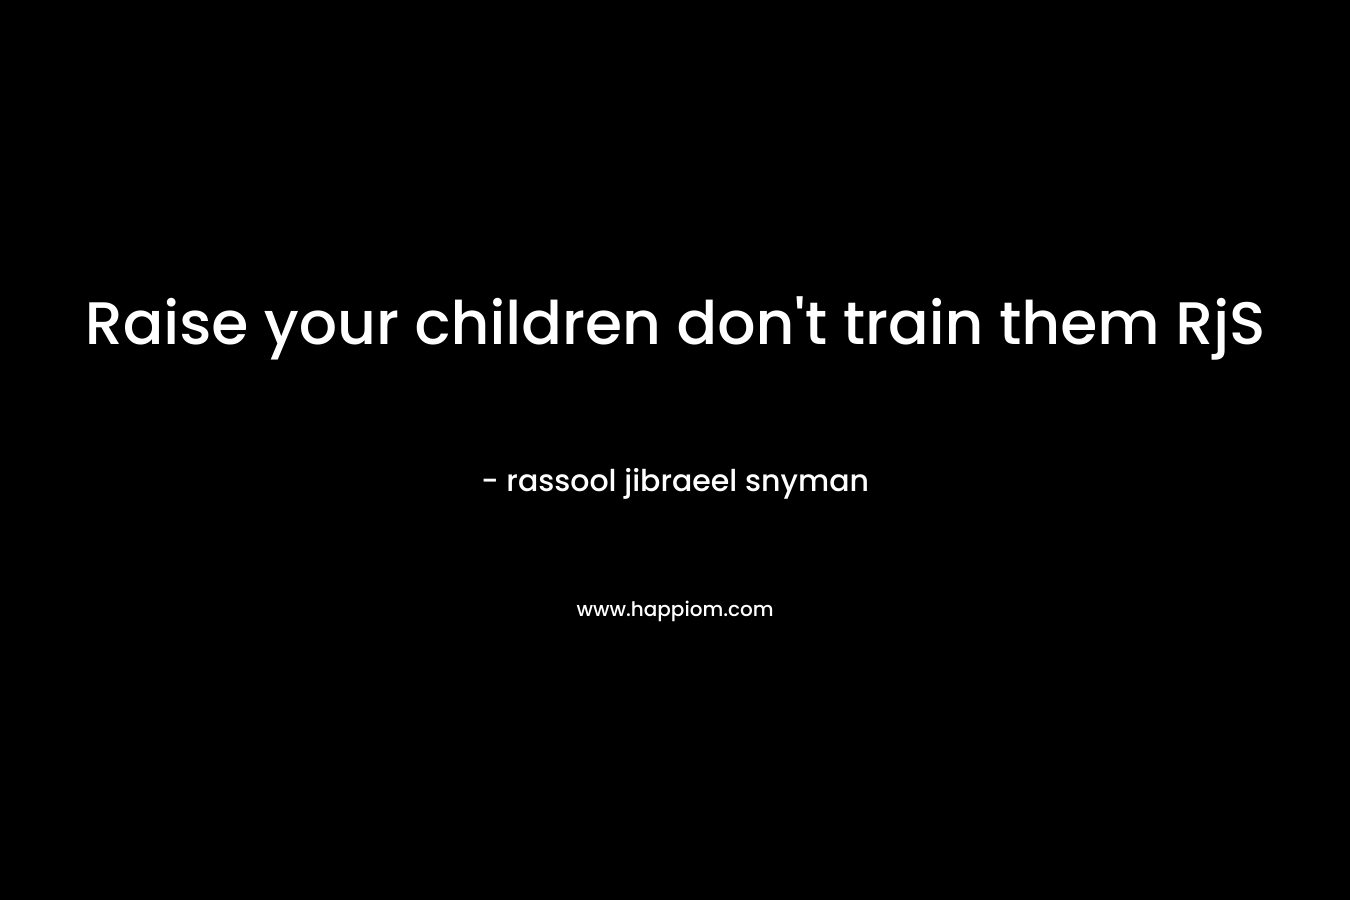 Raise your children don't train them RjS